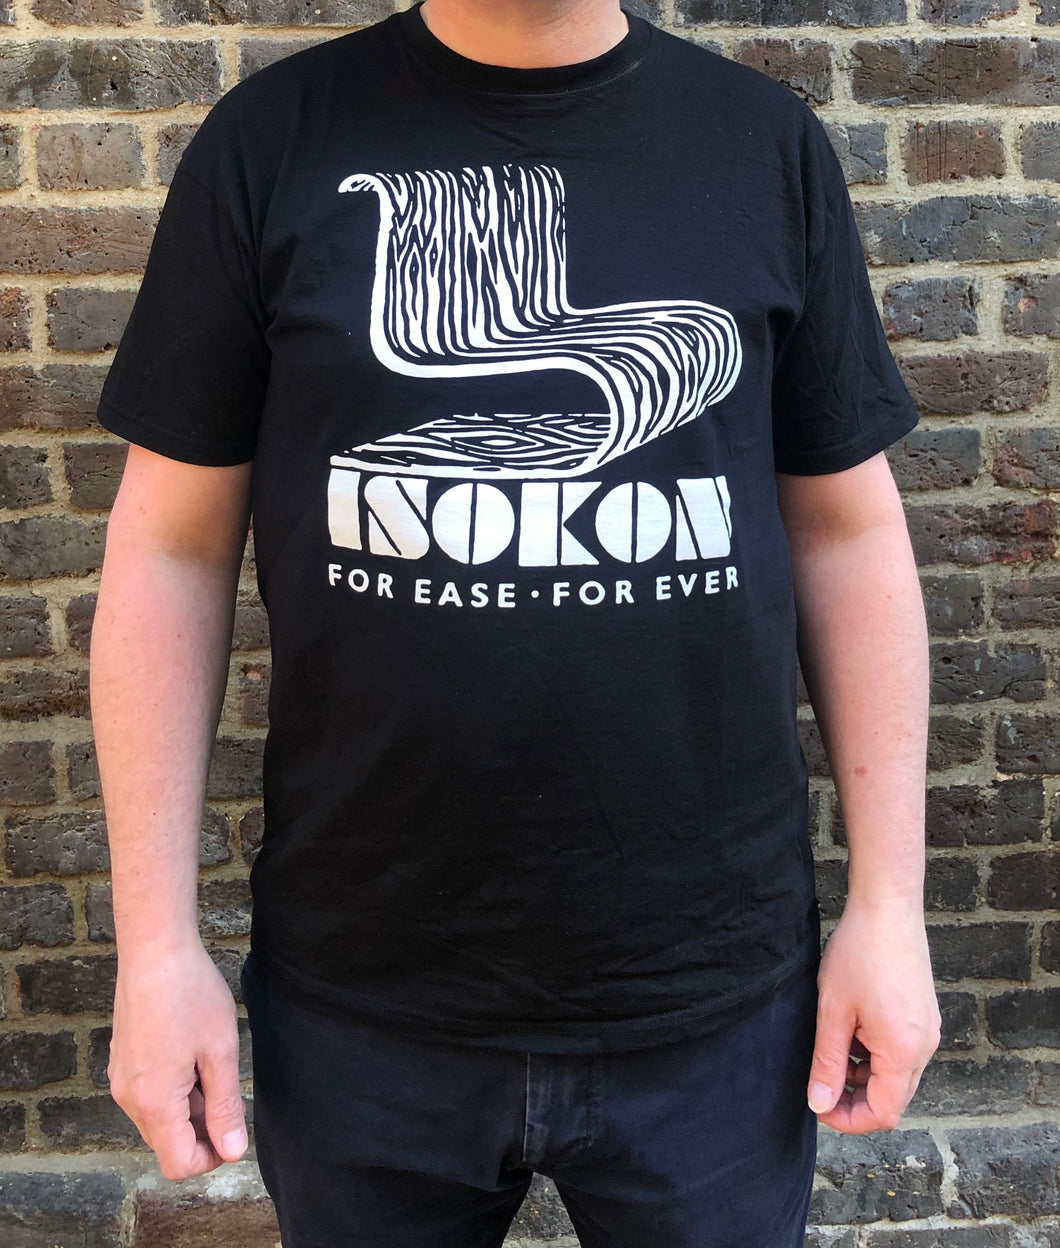 Isokon T-shirt by László Moholy-Nagy black